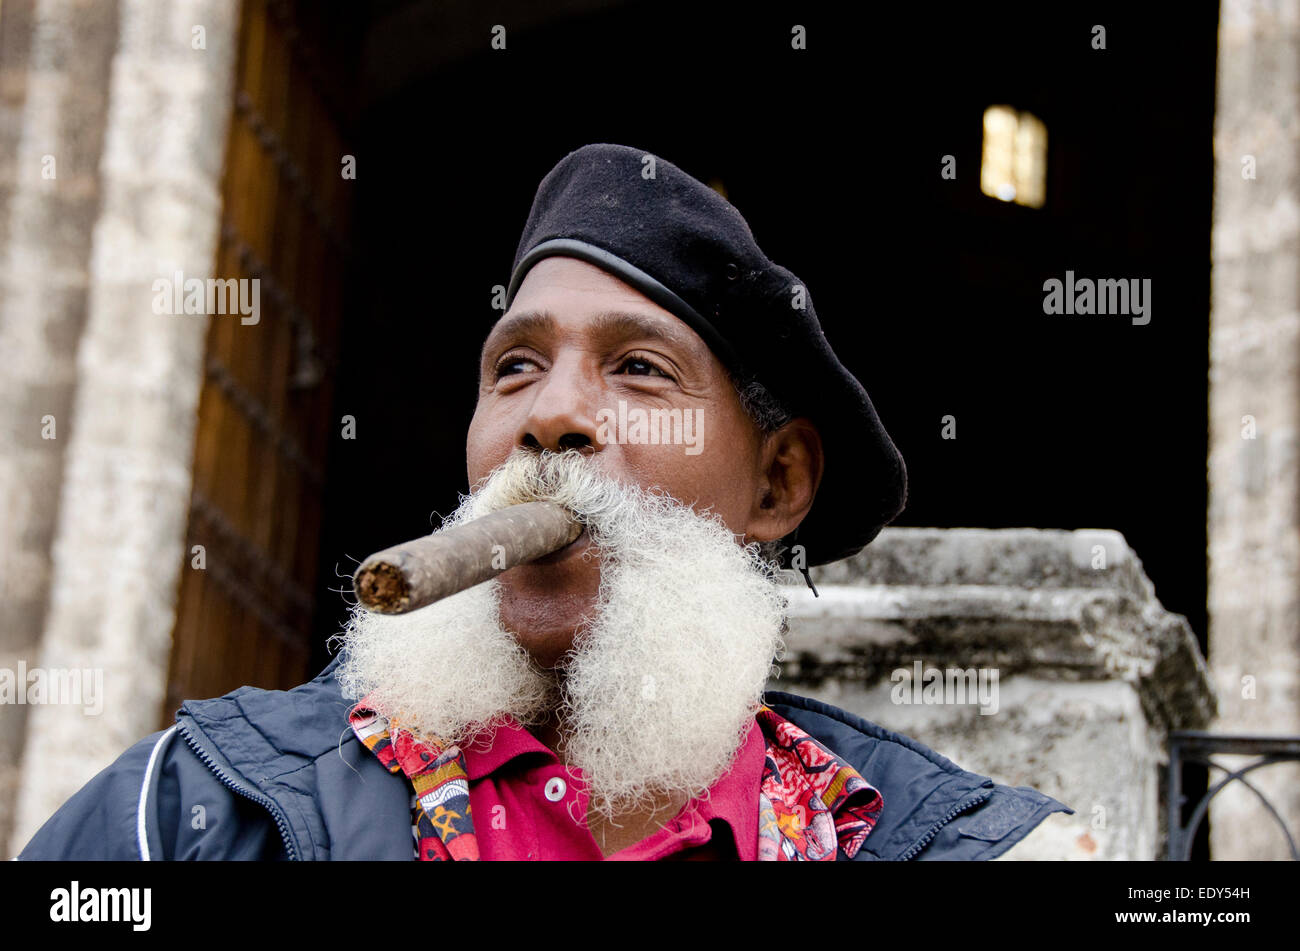 Cuban man smoking a large cigar in Havana, Cuba Stock Photo